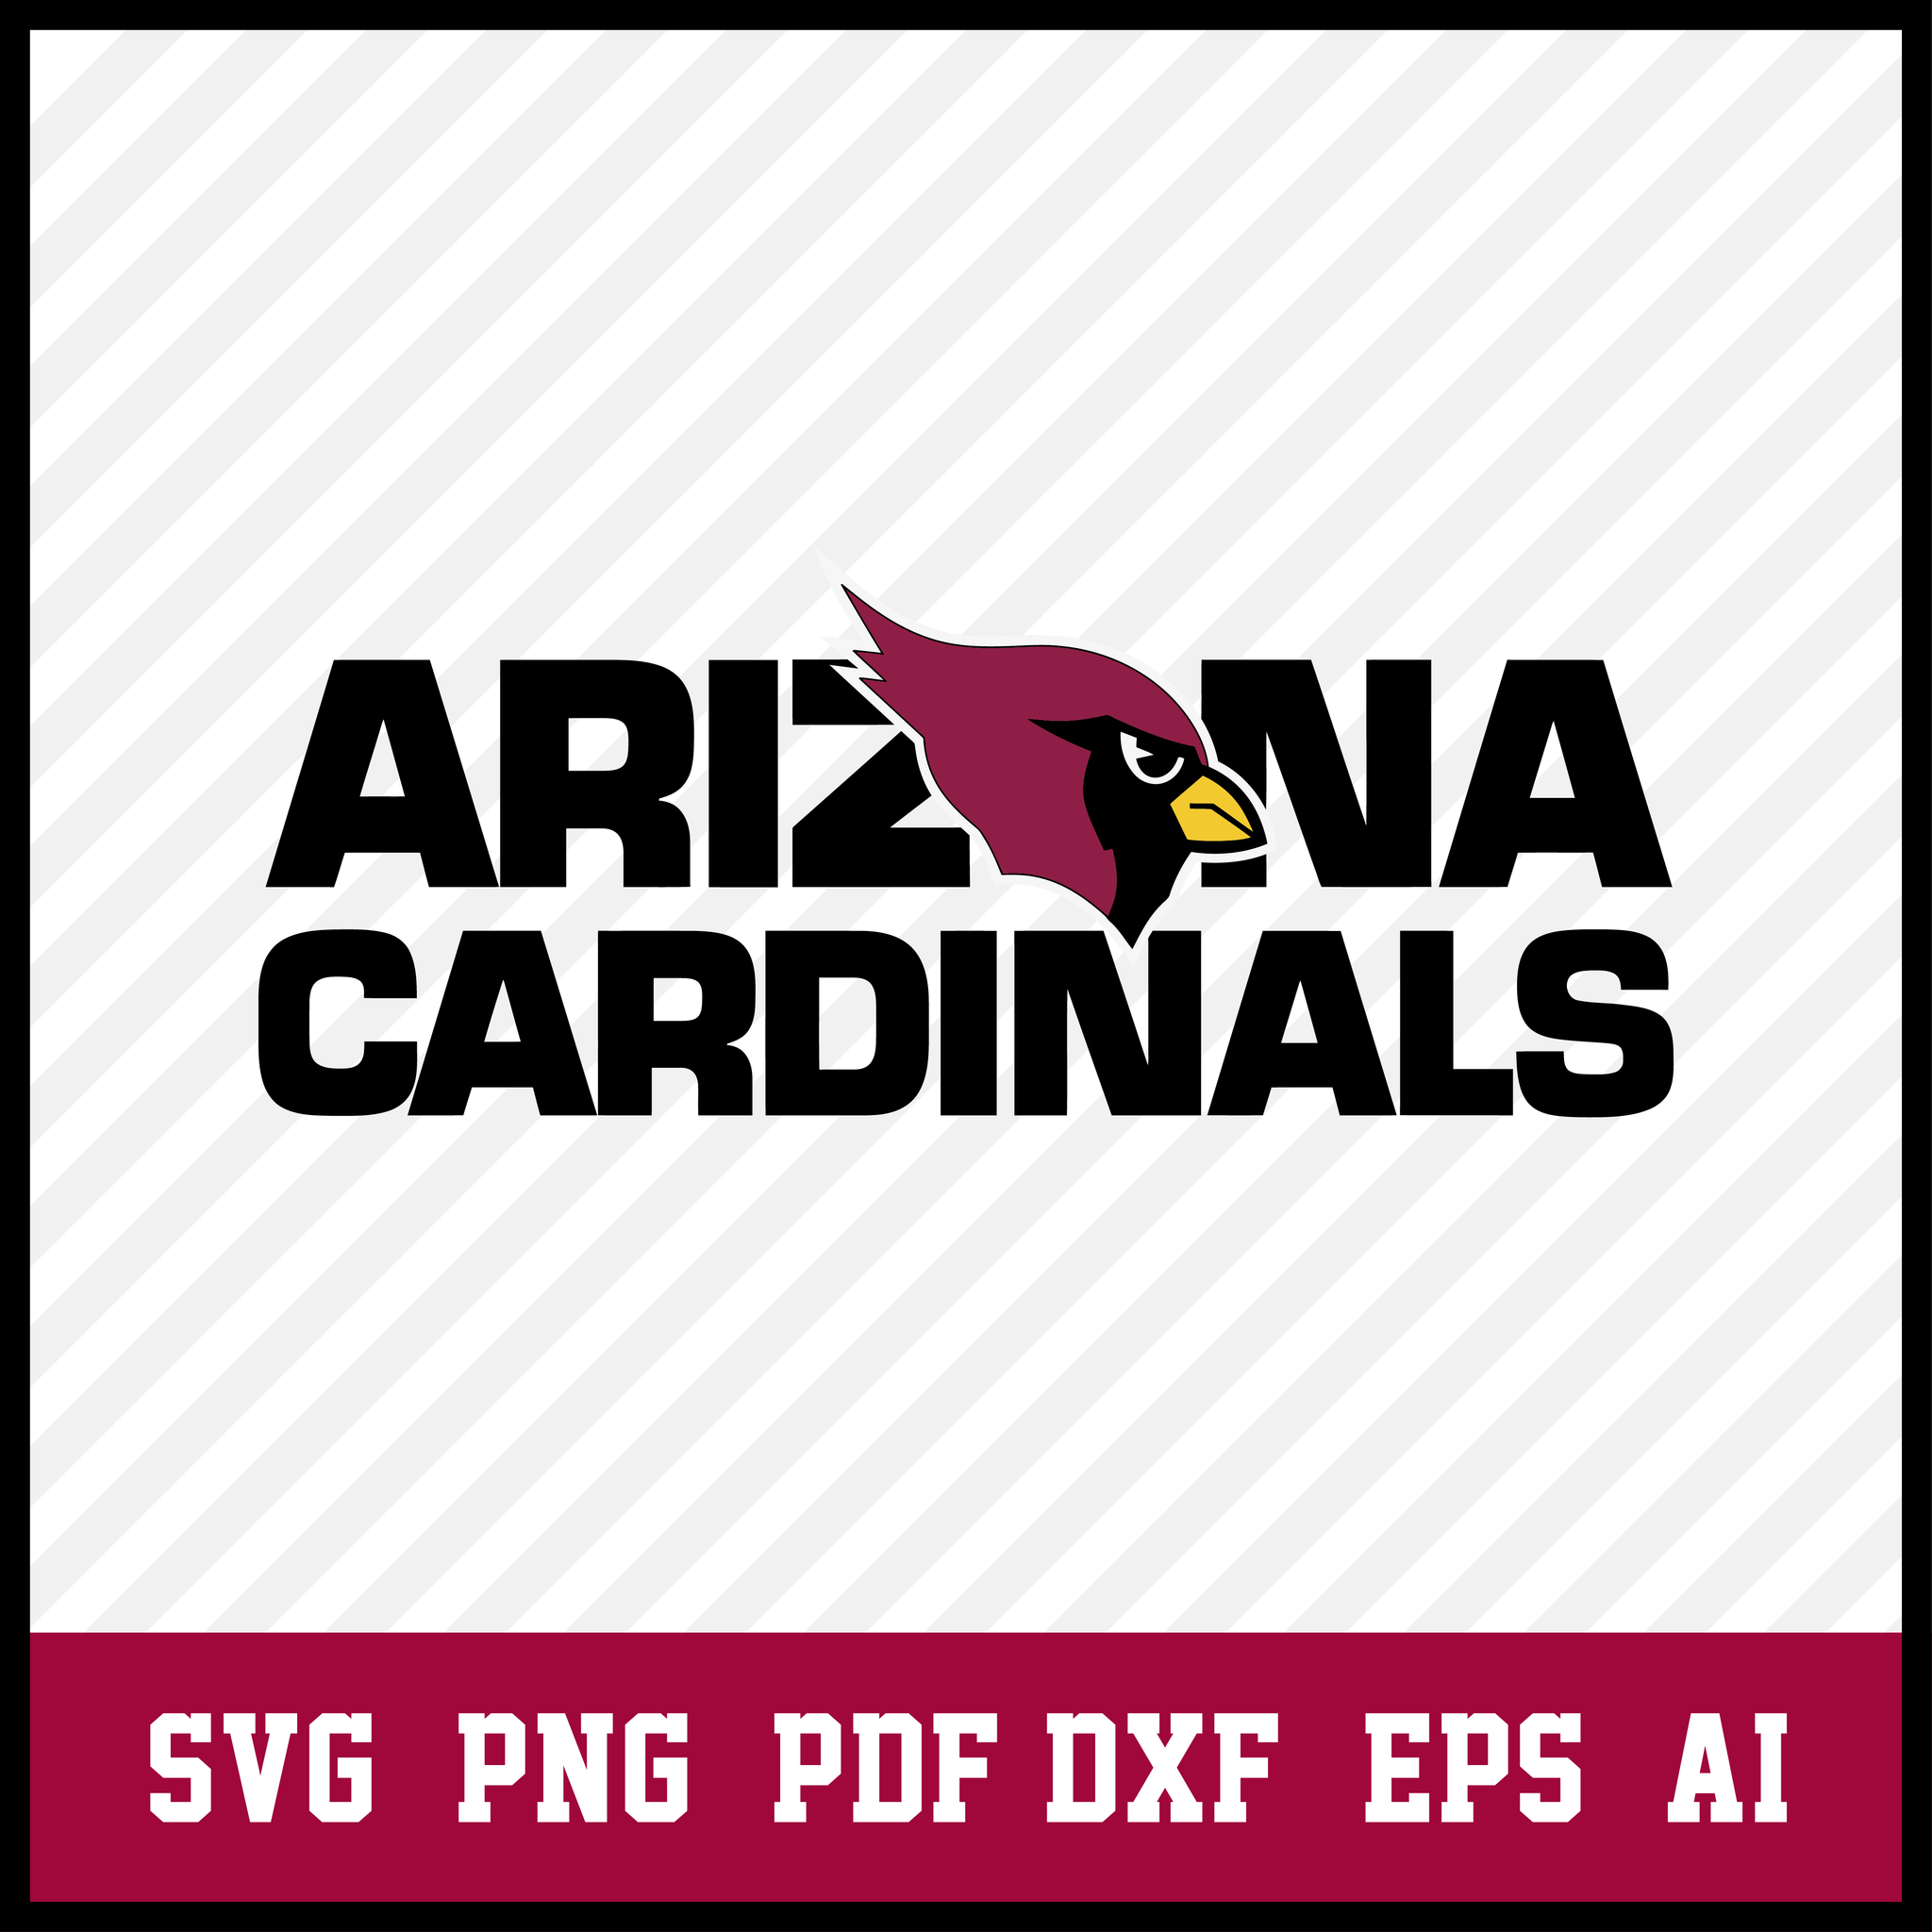 arizona cardinals banner